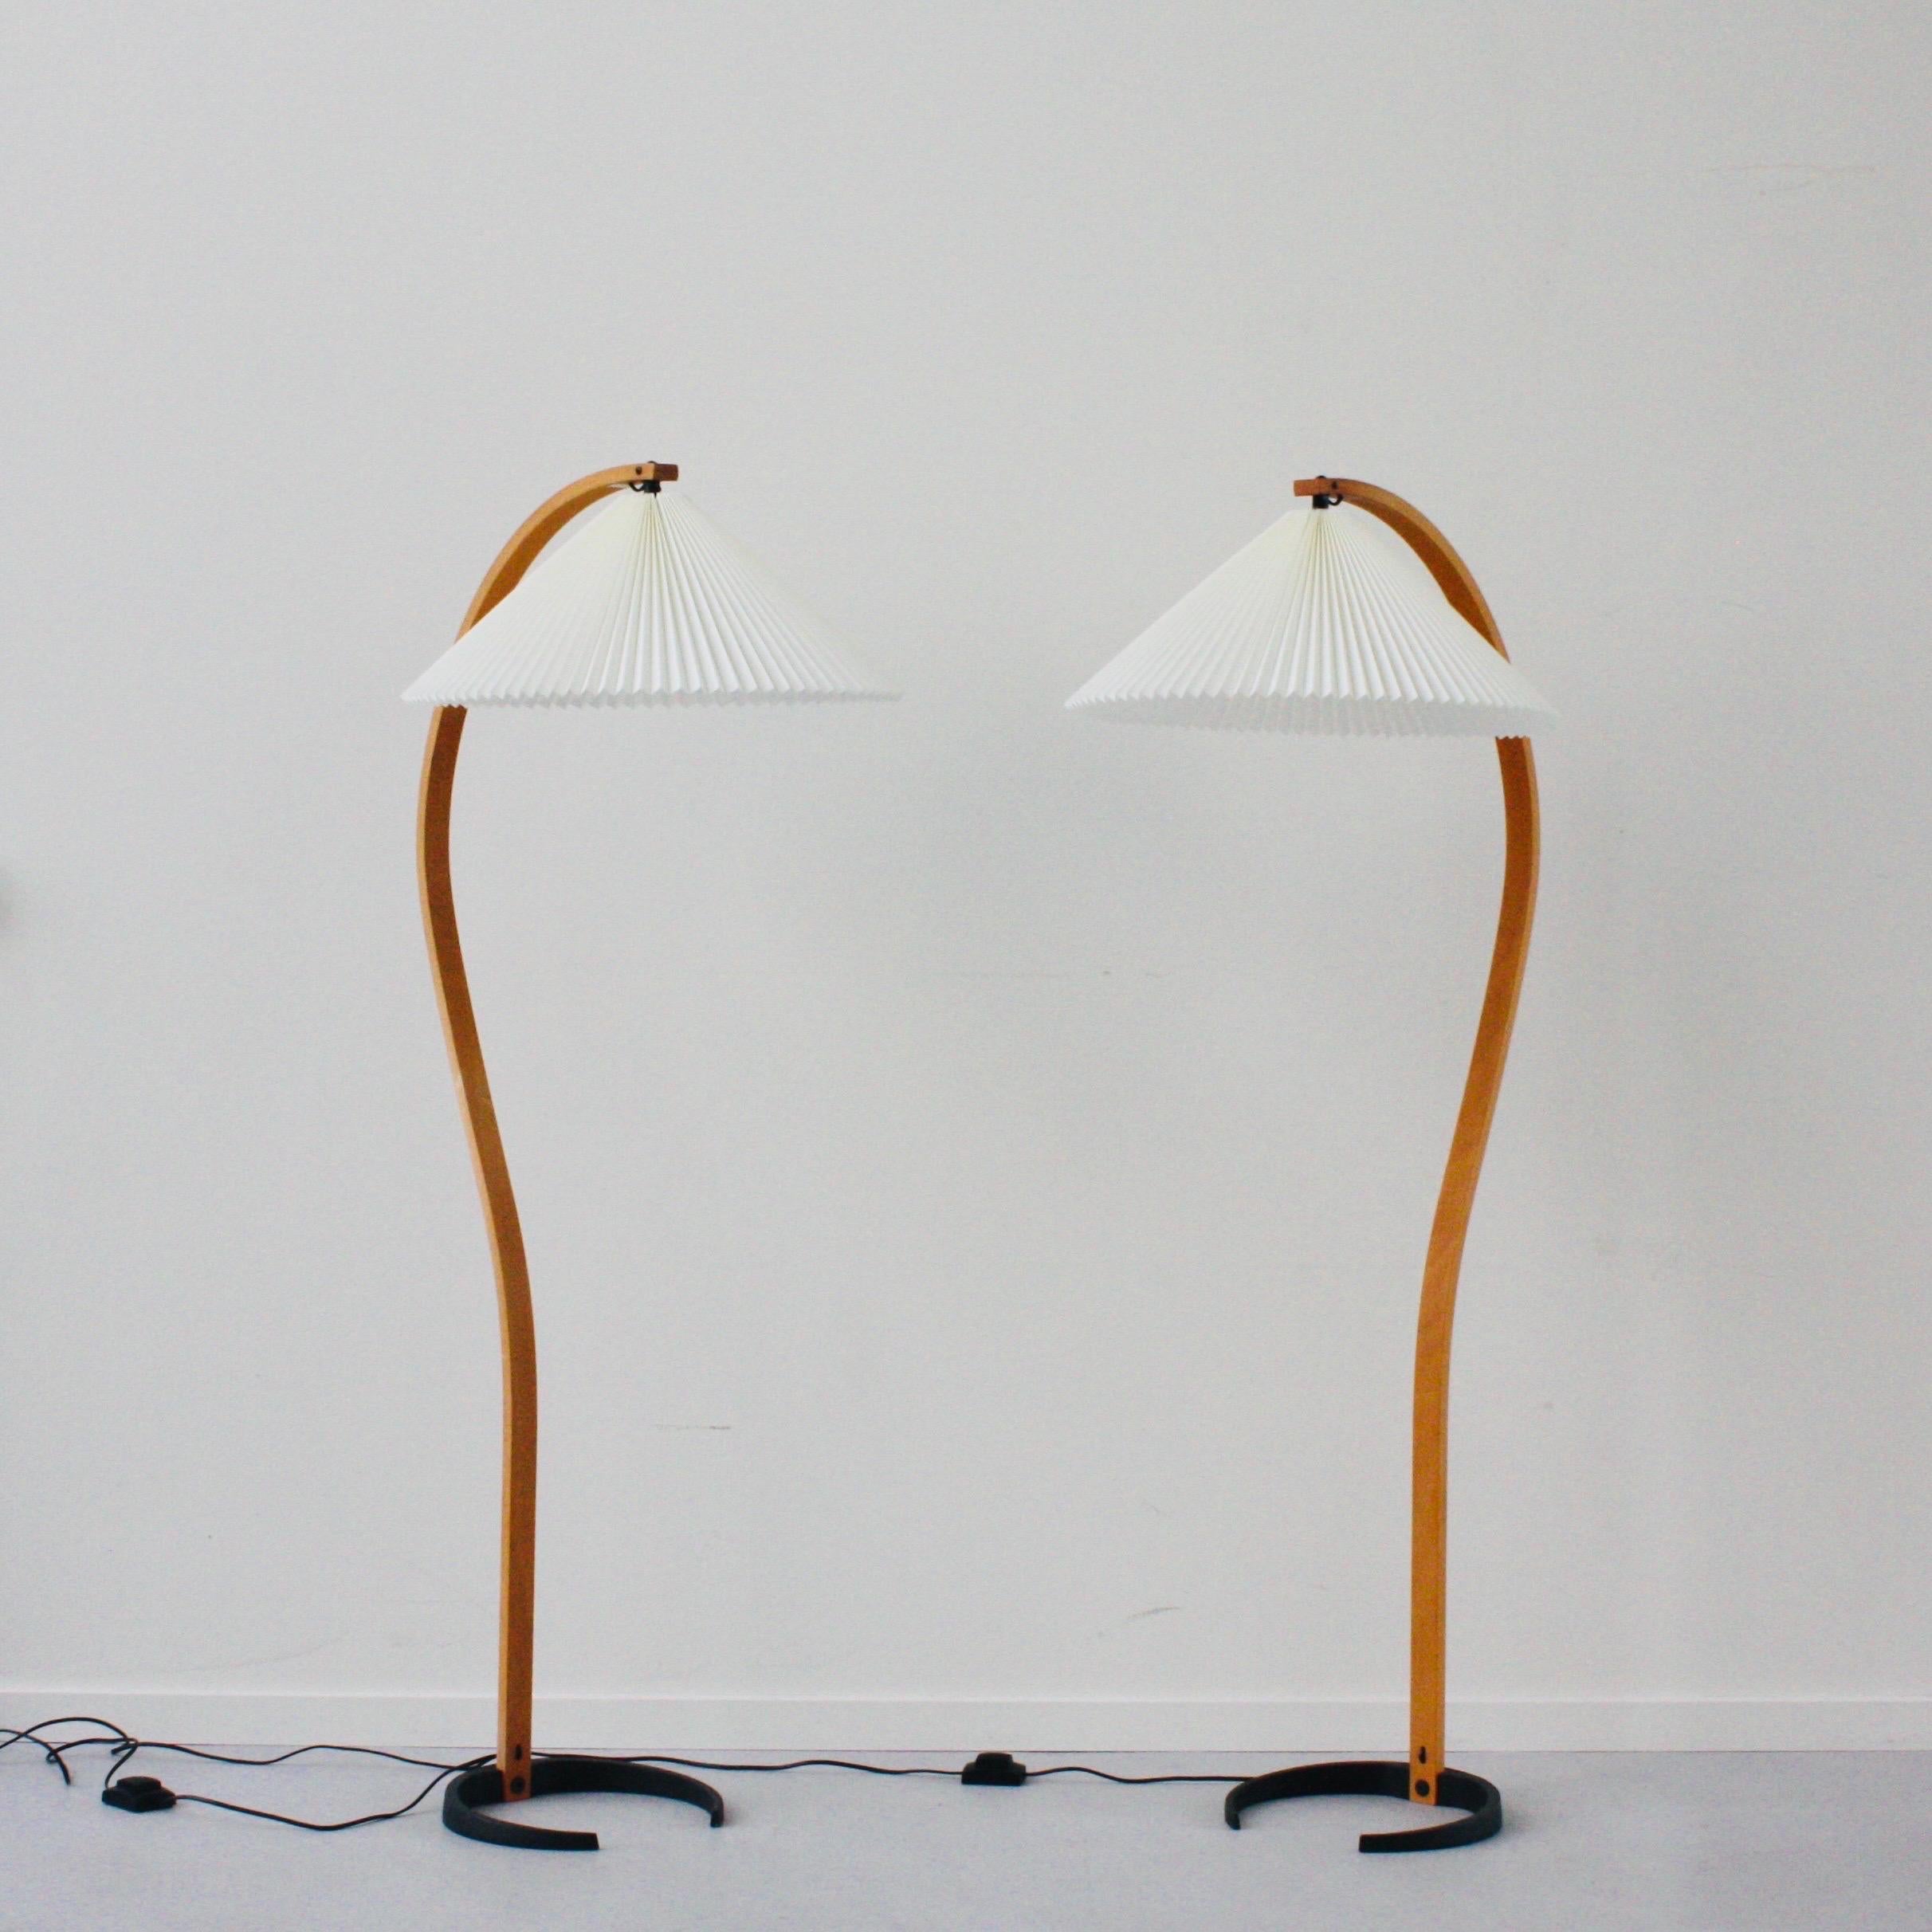 Paire de lampadaires danois Timberline no. 840 par Mads Caprani. Un design frappant - à la fois quintessence des années 1970 et intemporel - parfait pour tout intérieur moderne.

* Un ensemble (2) de lampadaires courbés en placage de hêtre avec de